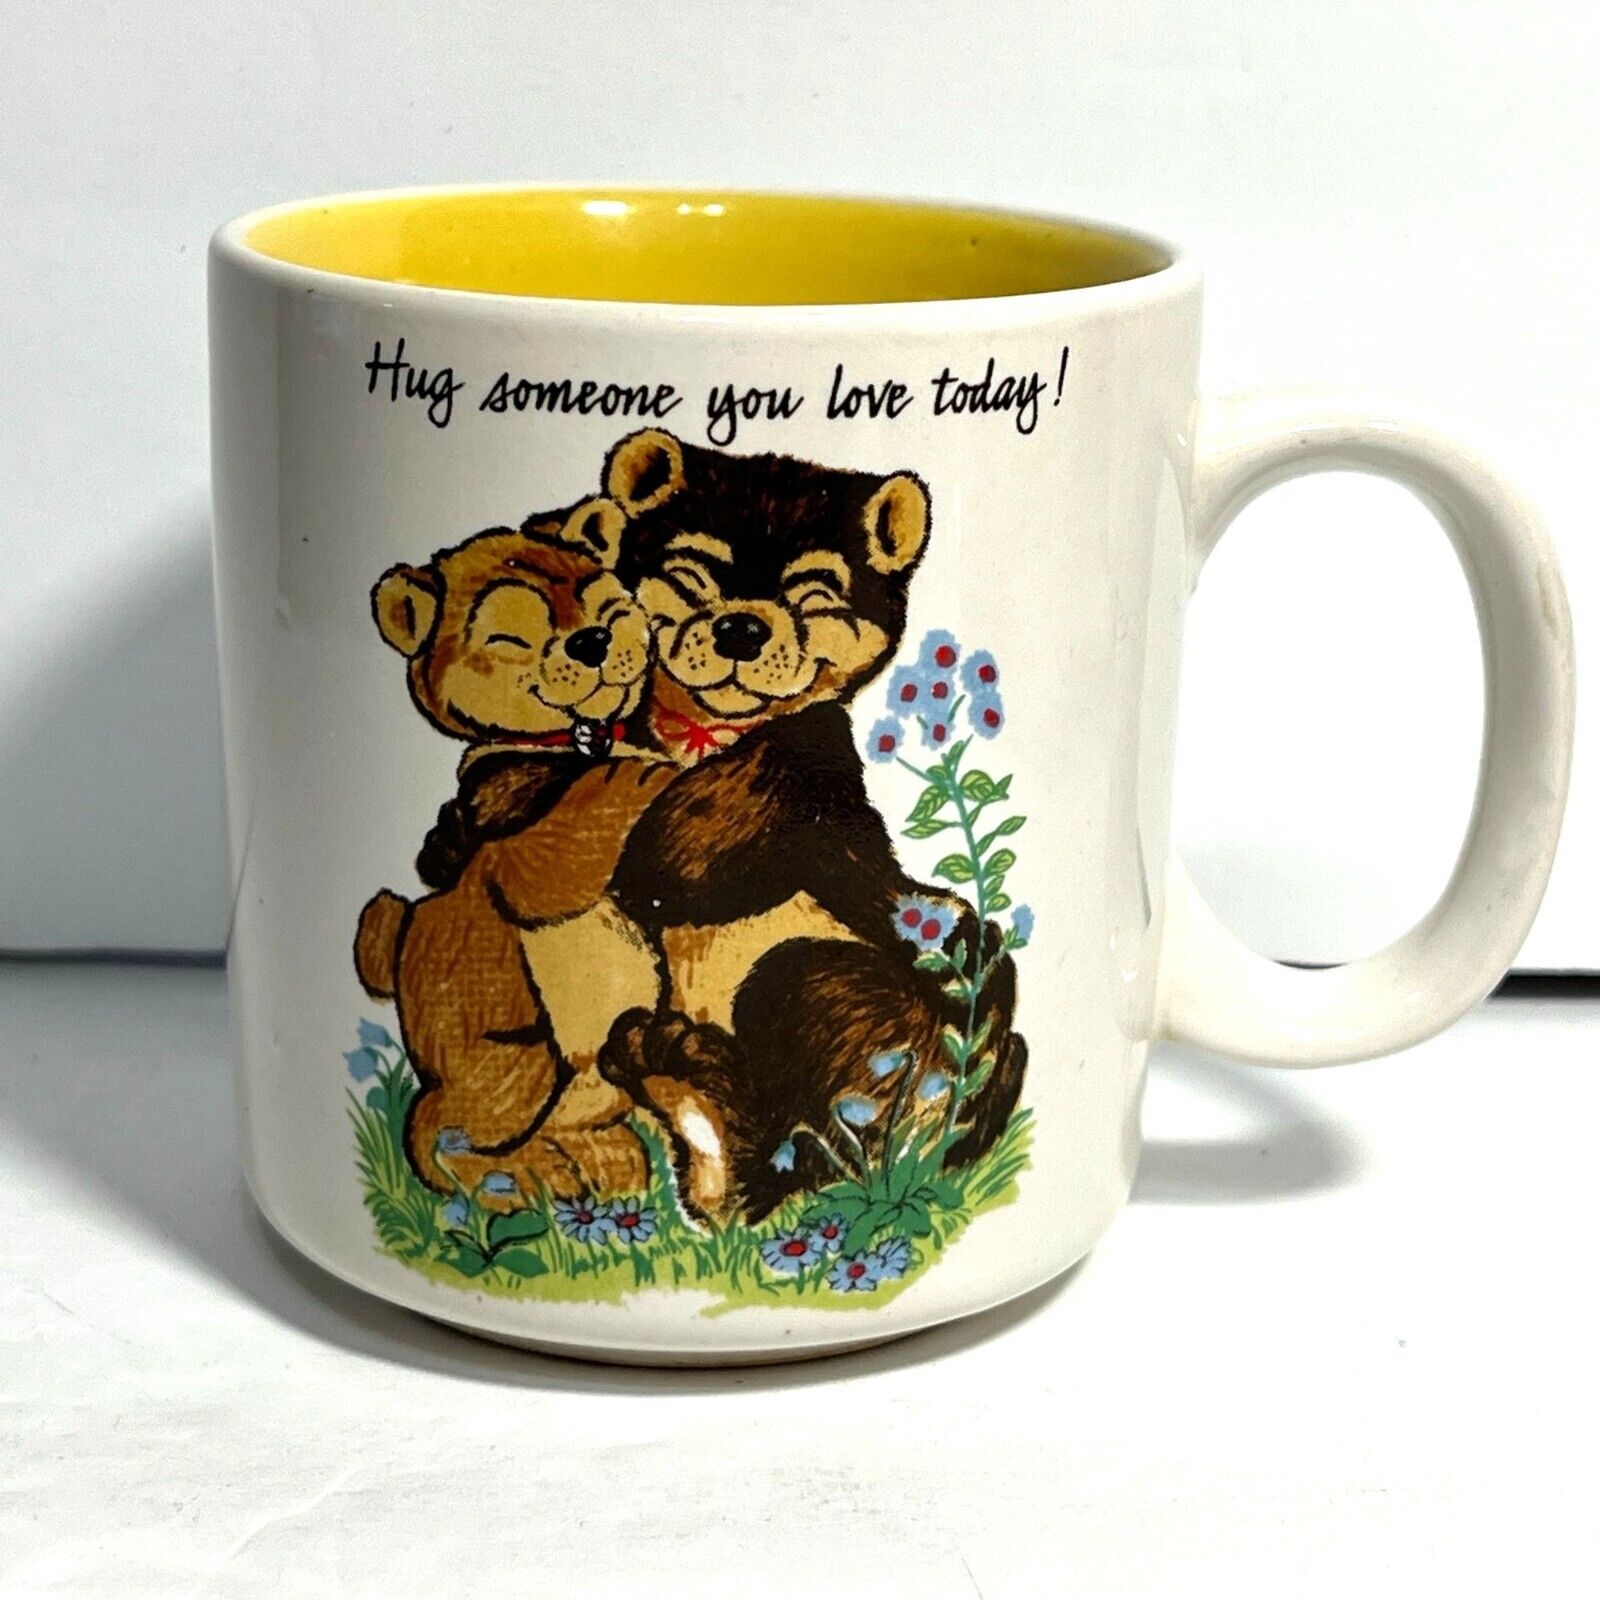 Vintage 1970s Teddy Bear Mug Hug Someone You Love Today